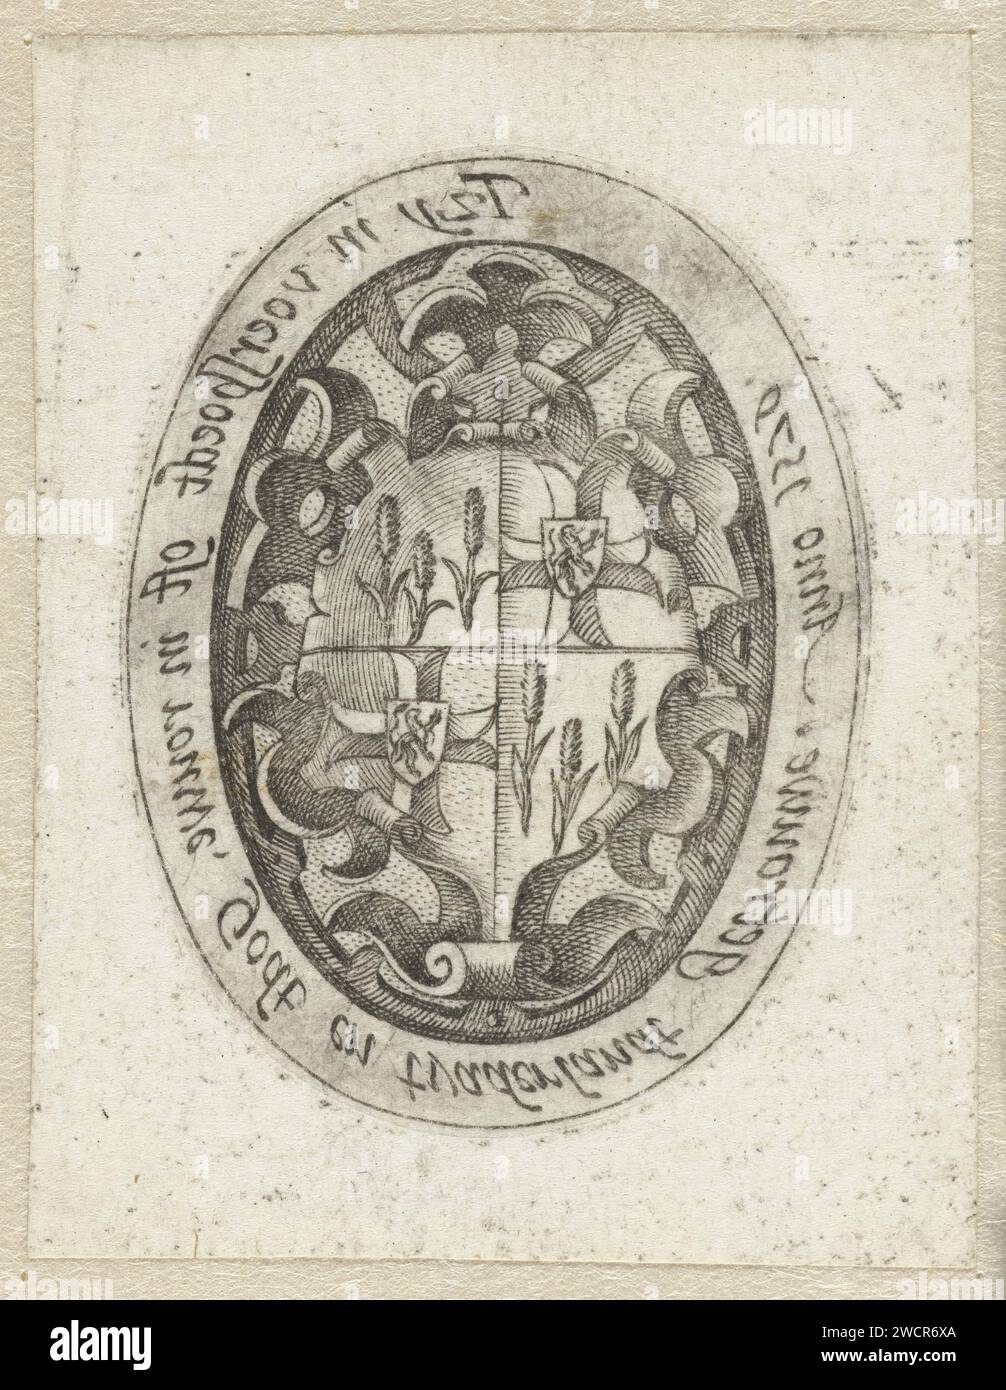 Arme avec Lions et Korenaren, Hendrick Goltzius, 1579 estampes Crest de famille (deux fois une croix avec un lion, deux fois trois coins du maïs) à Ovaal. Autour de l'ovale une inscription en néerlandais en image miroir. Dans TIB identifié comme l'arme de Gillis van Breen, probablement principalement basé sur le portrait sur le revers du médaillon. Cependant, l'identification de la personne représentée avec Van Breen ne peut être soutenue. Haarlem gravure sur papier portant armorial, héraldique Banque D'Images